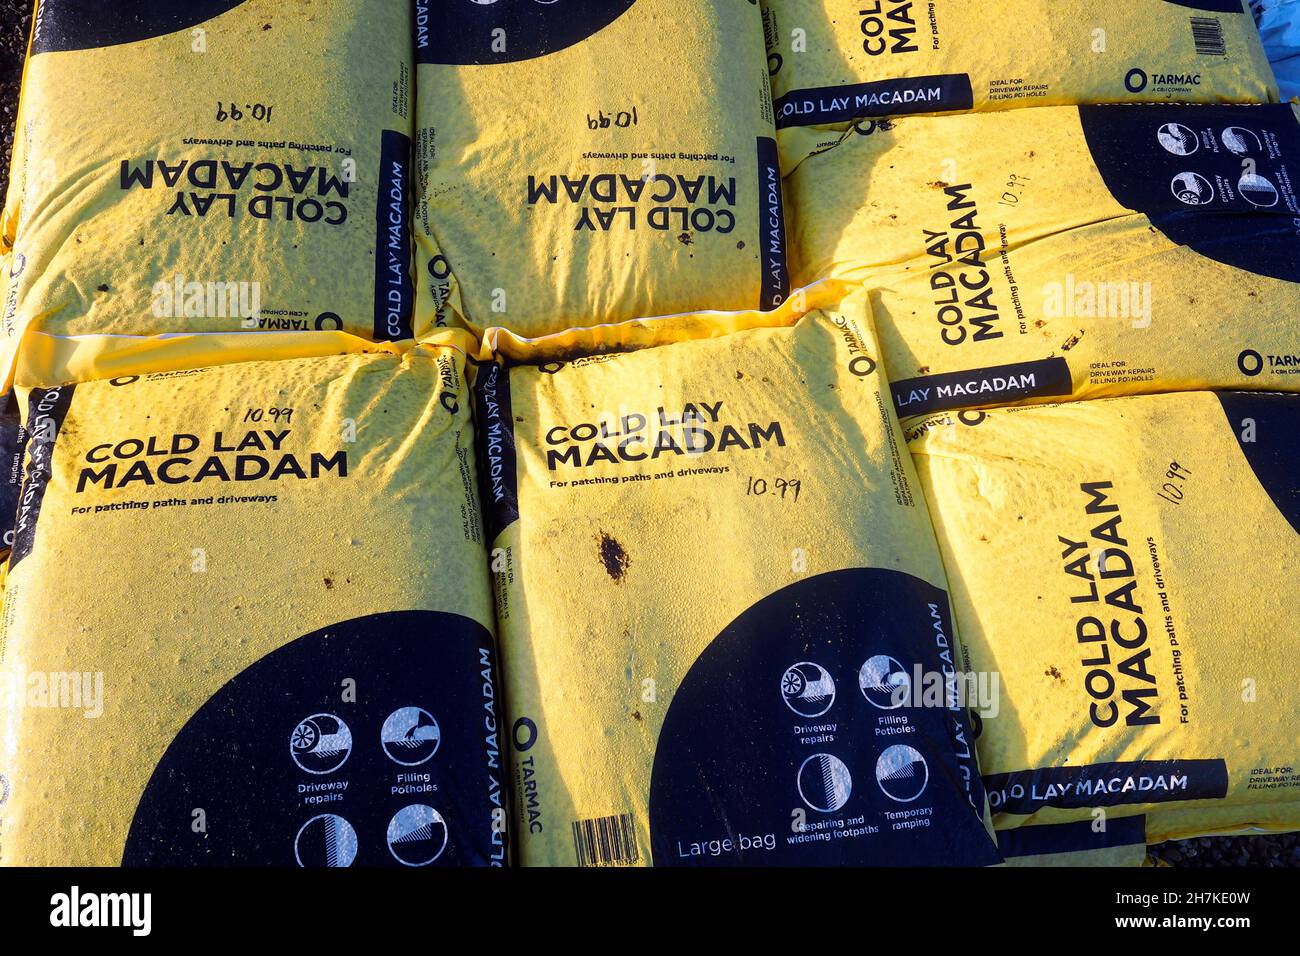 Une pile de sacs de Macadam de Cold Lay pour réparer les chemins et les transmissions dans un centre de jardin Banque D'Images